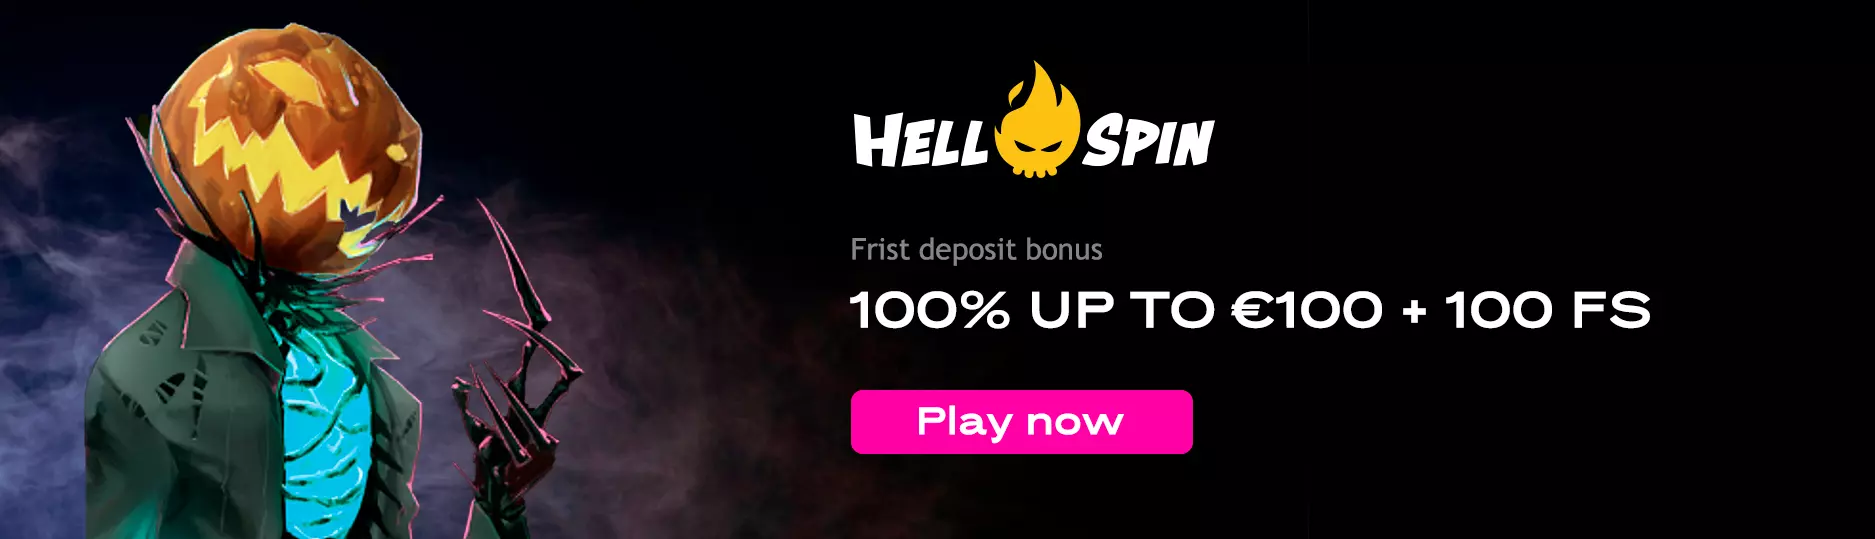 Hellspin casino bonus